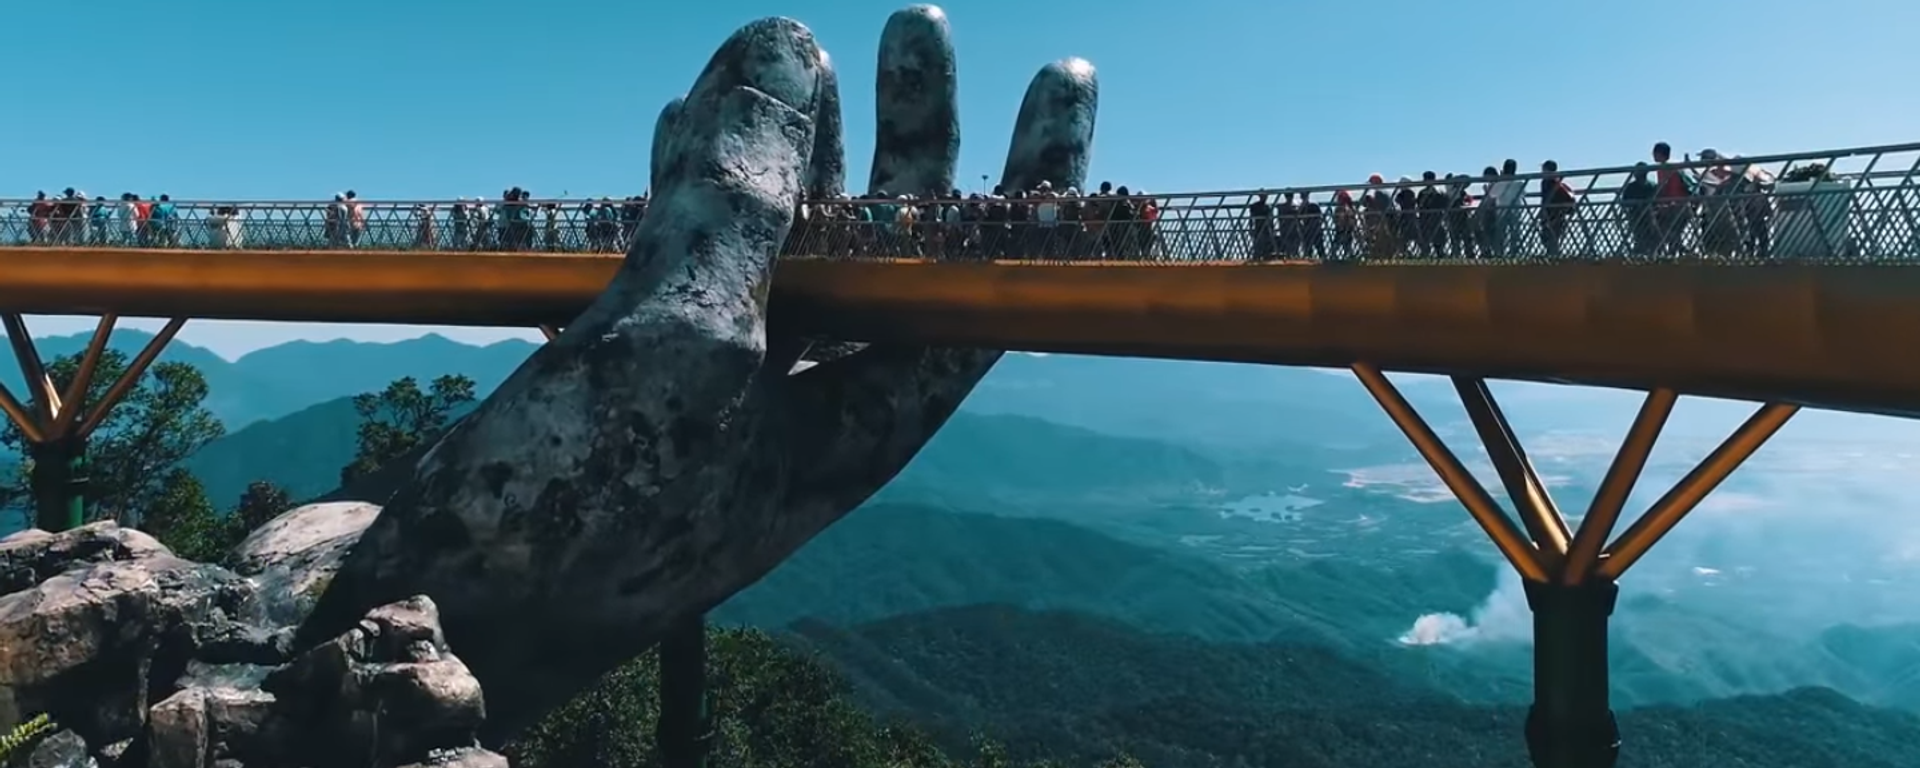 Cầu Vàng tại Sun World Ba Na Hills  - Sputnik Việt Nam, 1920, 27.07.2018